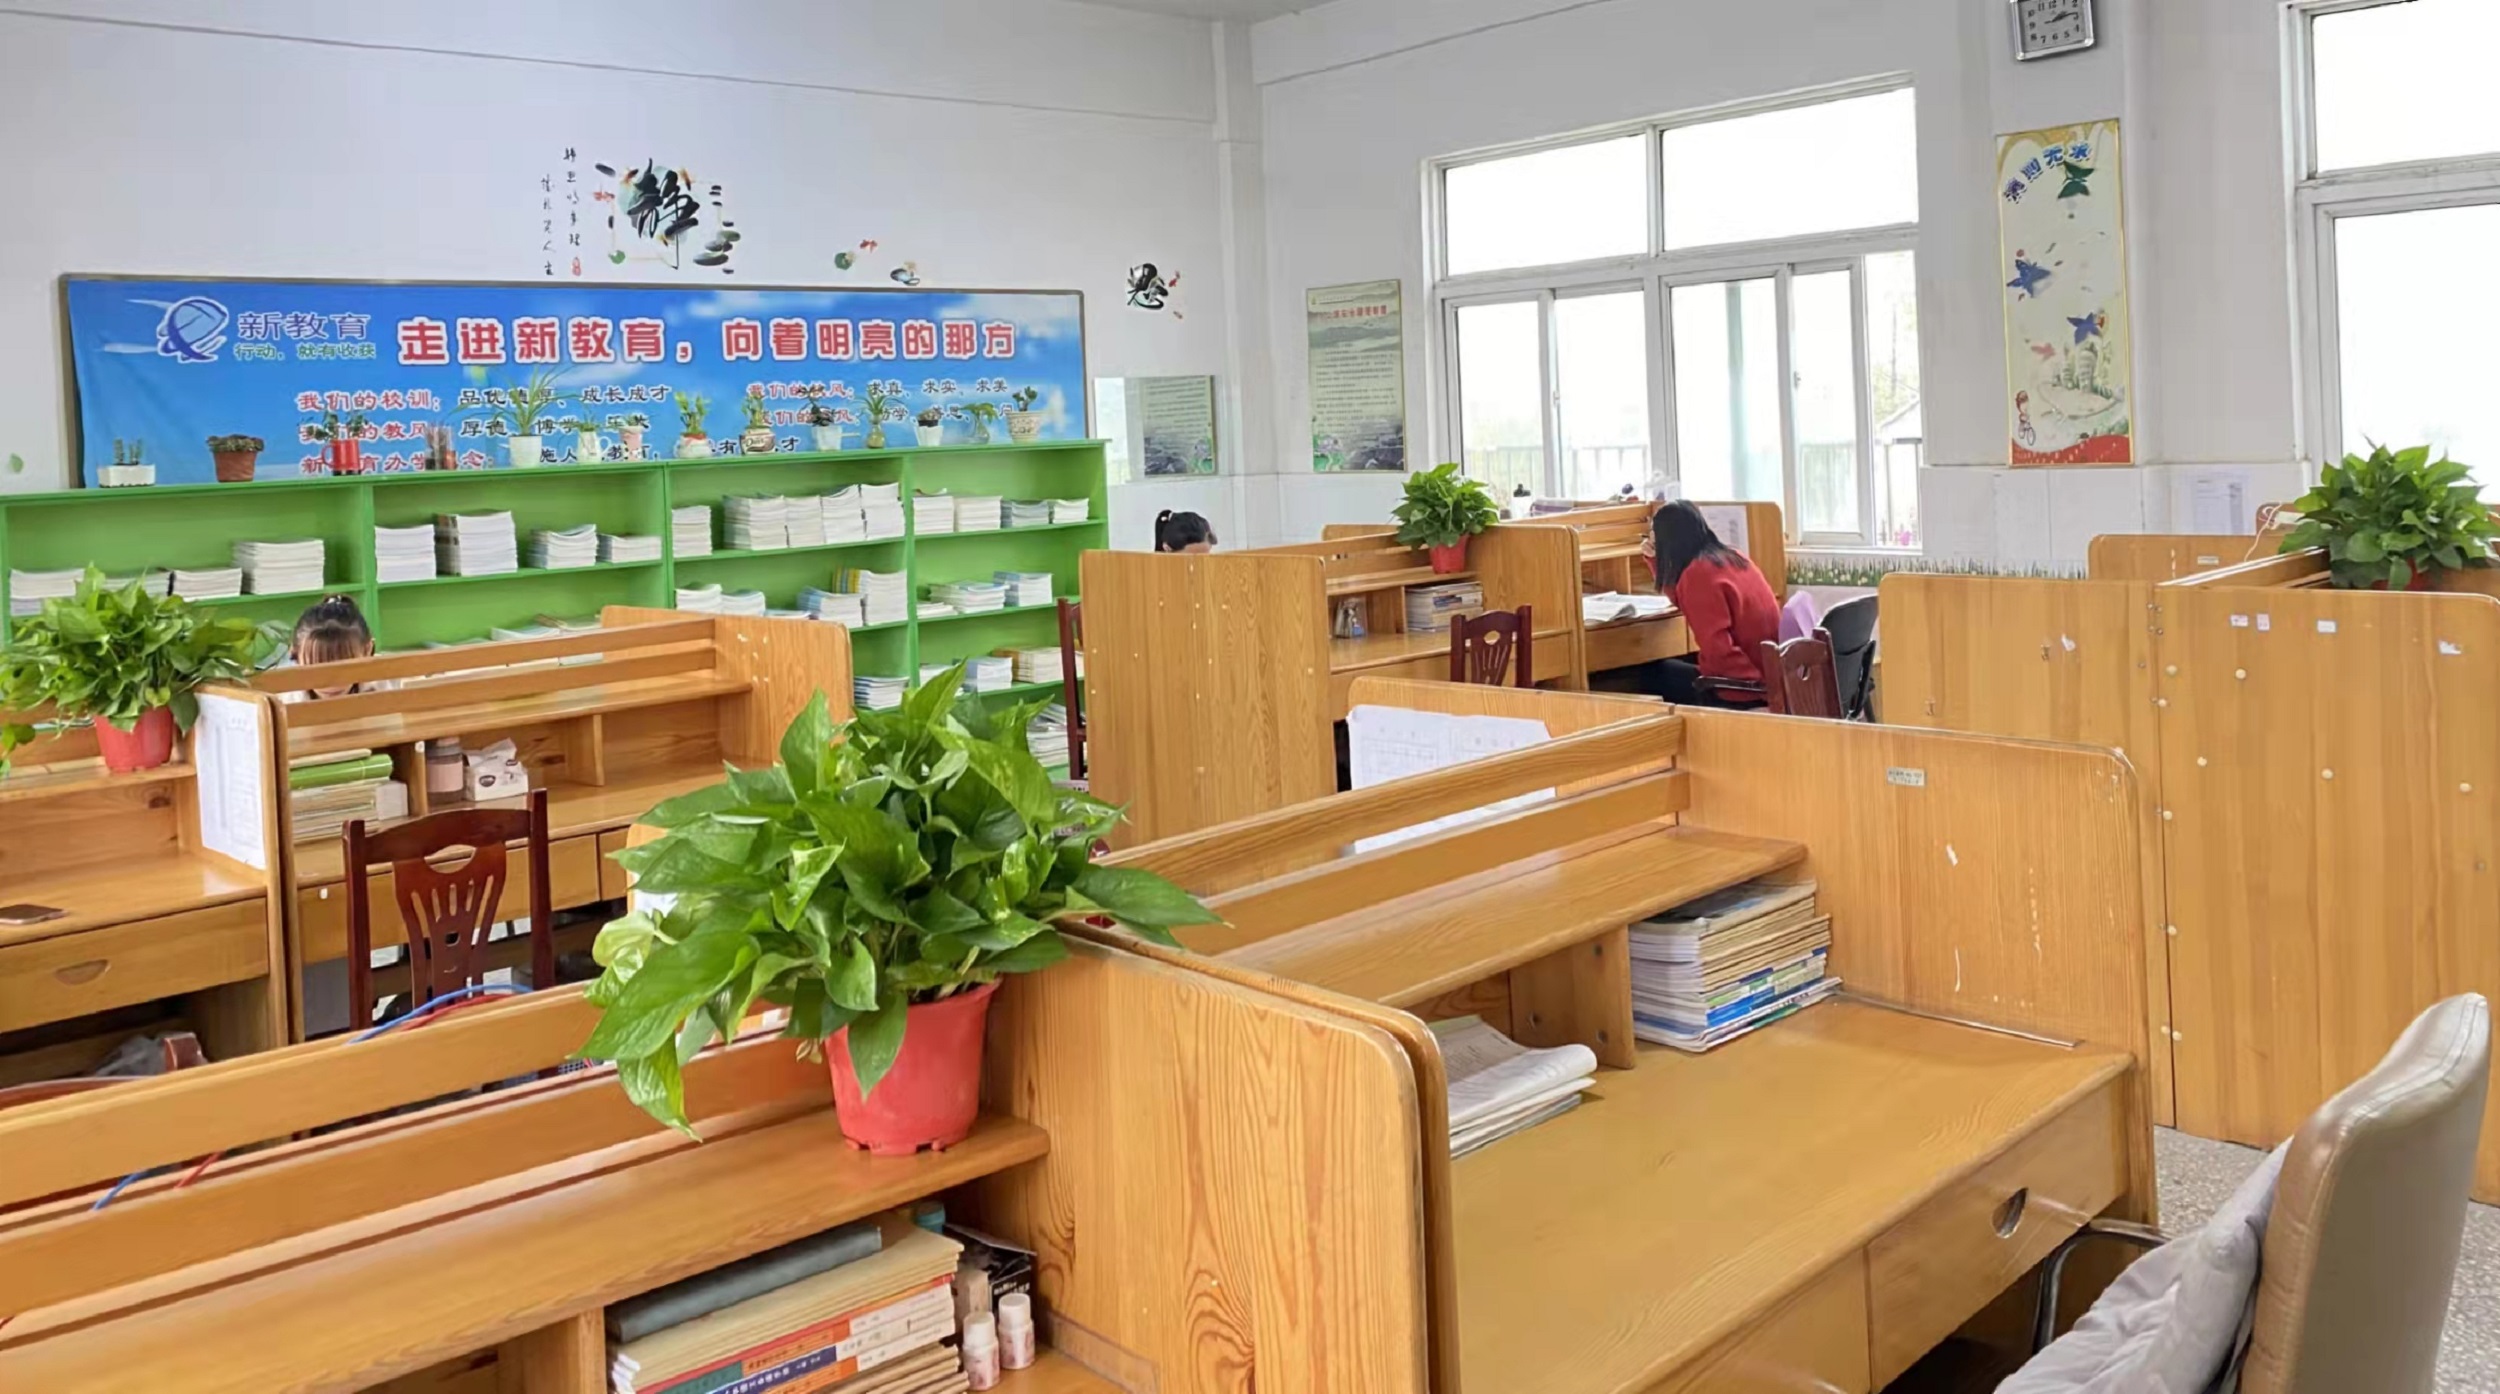 温馨办公环境，高效育人氛围 ——窑湾小学举行“最美办公室”评比活动